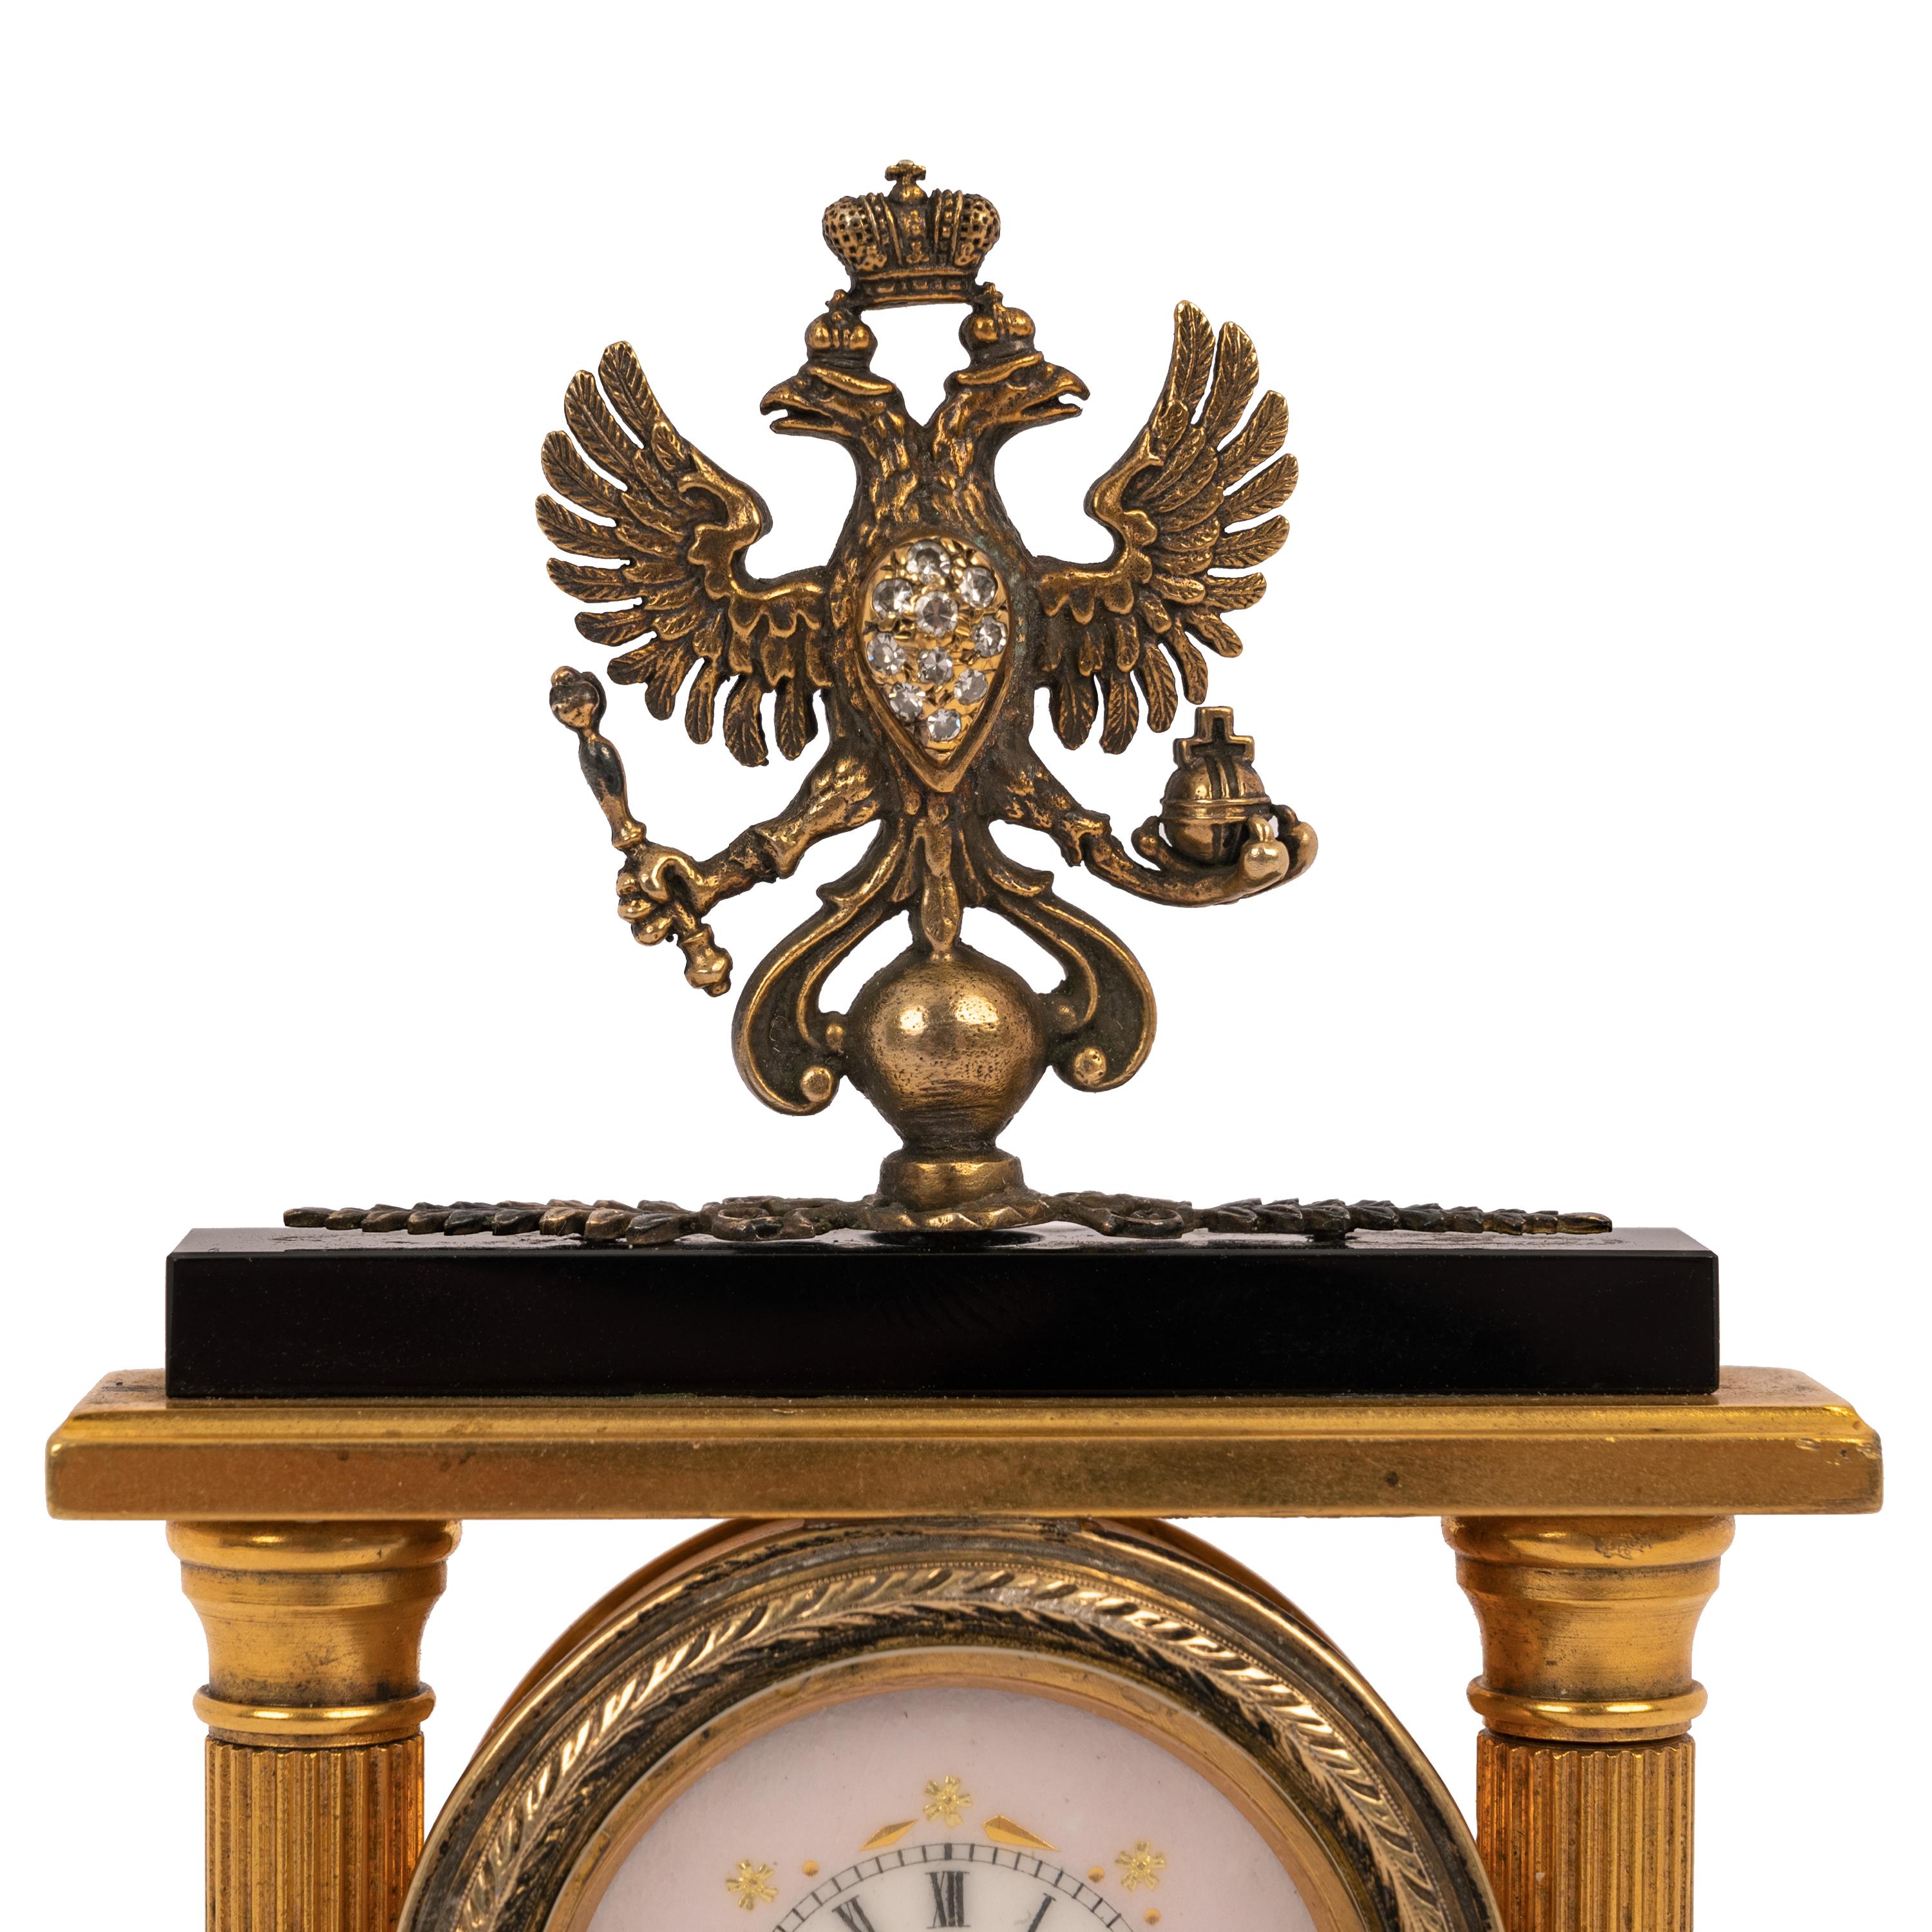 Importante et ancienne horloge de bureau impériale russe Faberge en argent doré, calcédoine (onyx noir) et diamants, réalisée par le maître d'œuvre Feodor Afanassiev (1870-1927), l'horloge datant d'environ 1900.
En 1883, Afanasiev s'installe à